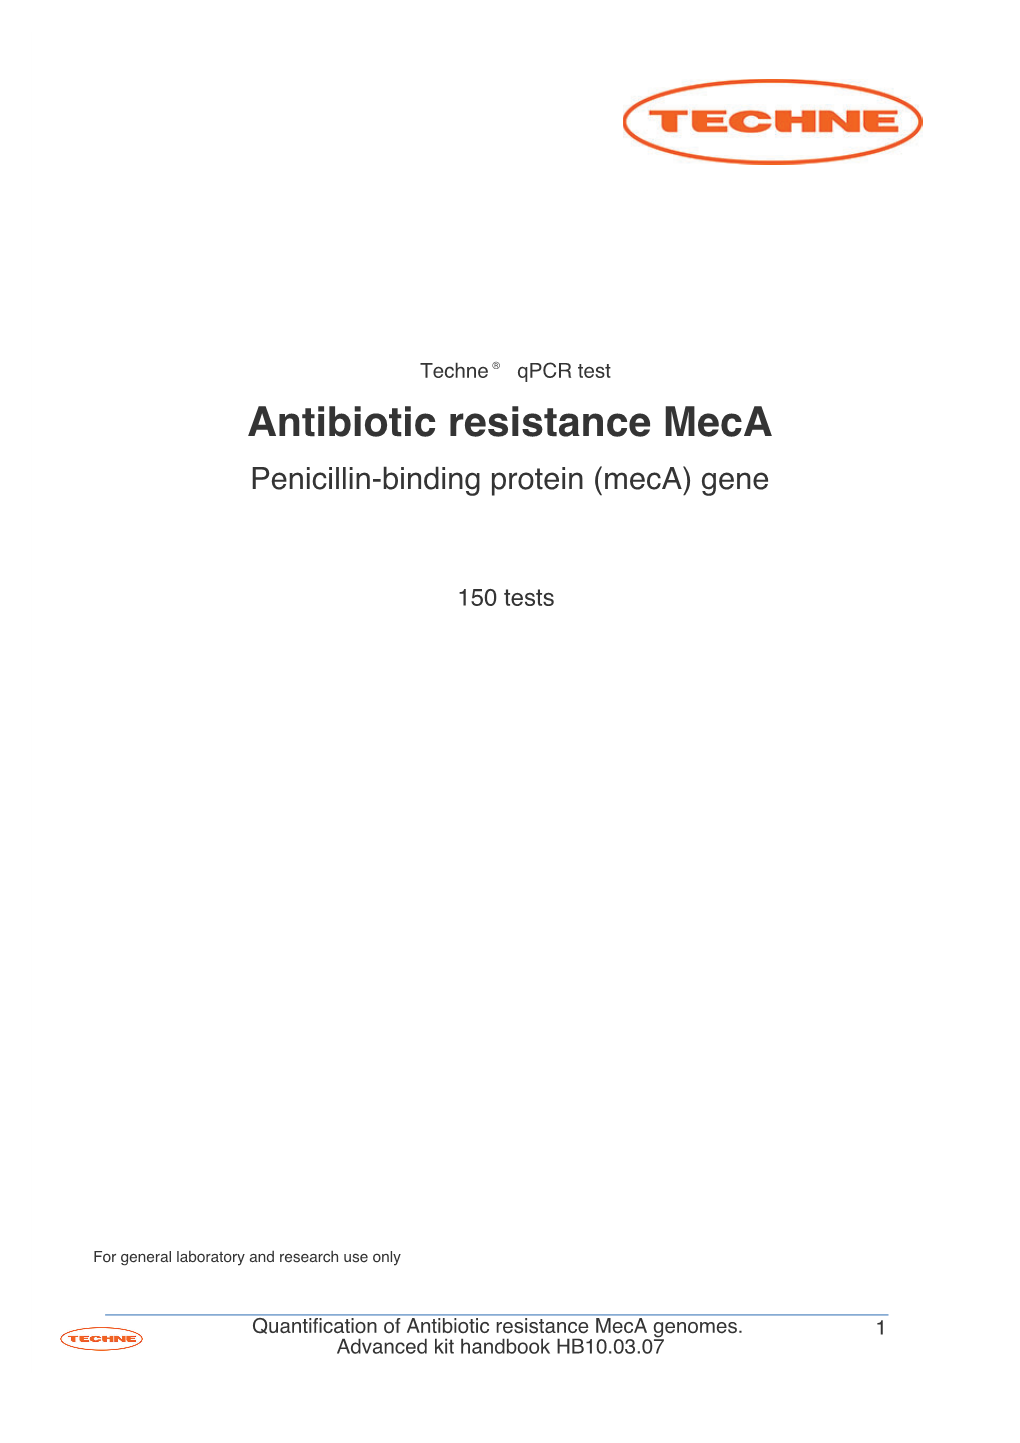 Antibiotic Resistance Meca Penicillin-Binding Protein (Meca) Gene